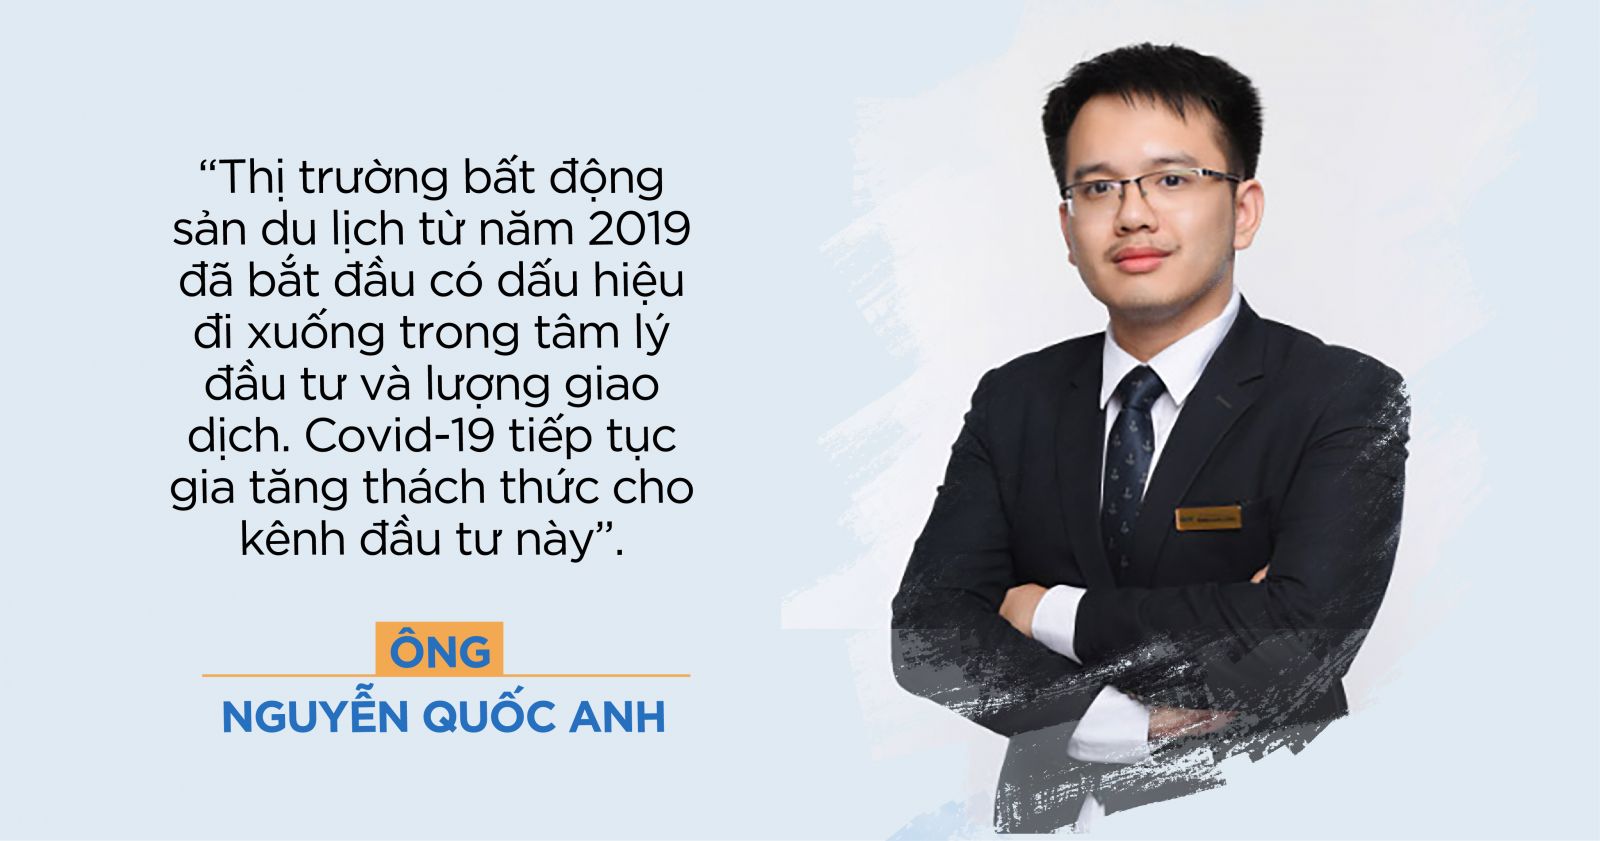 Ông Nguyễn Quốc Anh - Phó Tổng Giám đốc Batdongsan.com.vn